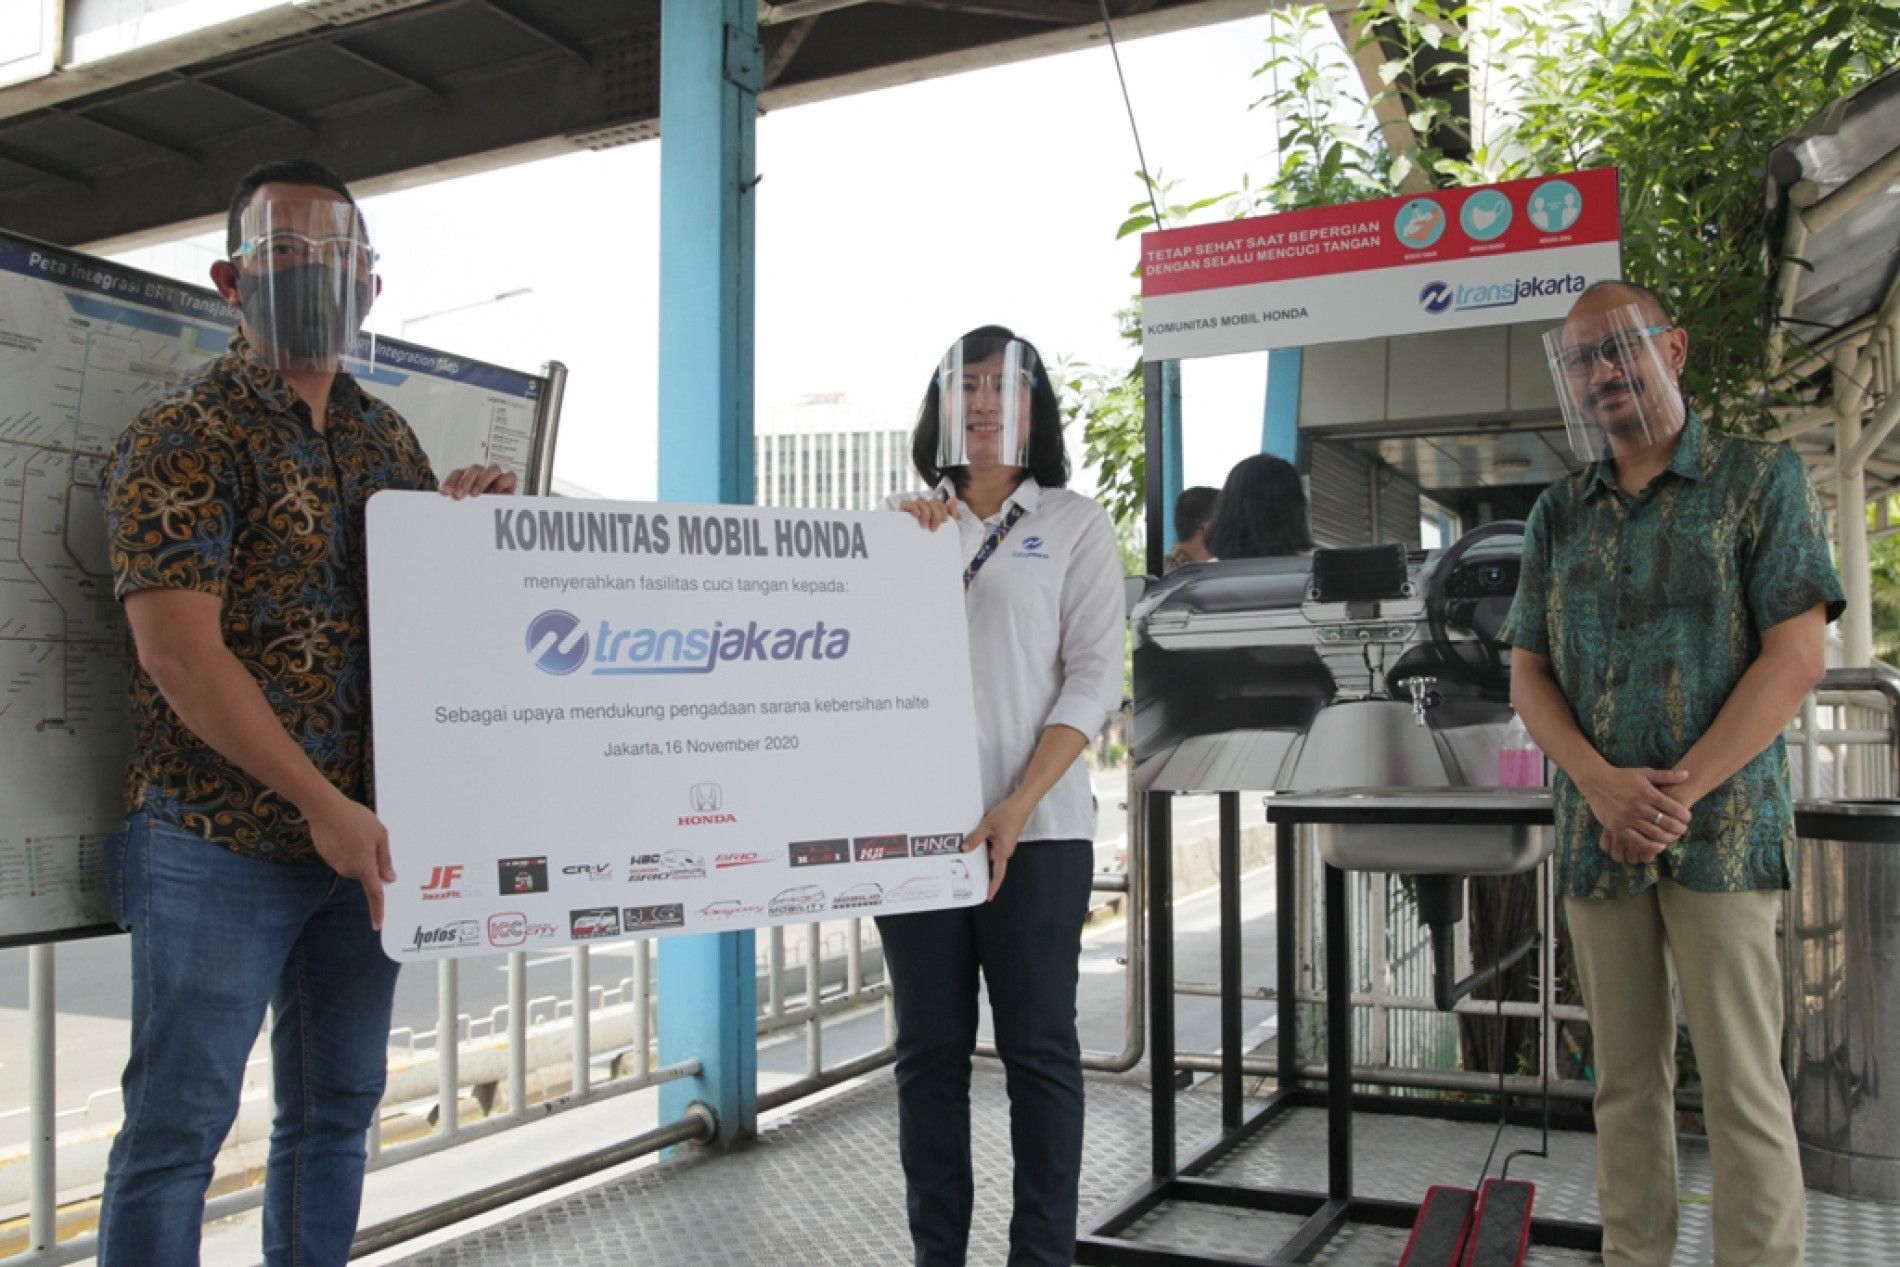 Dukung Pelaksanaan Protokol Kesehatan, Komunitas Mobil Honda Sumbangkan Fasilitas Cuci Tangan untuk Halte Transjakarta